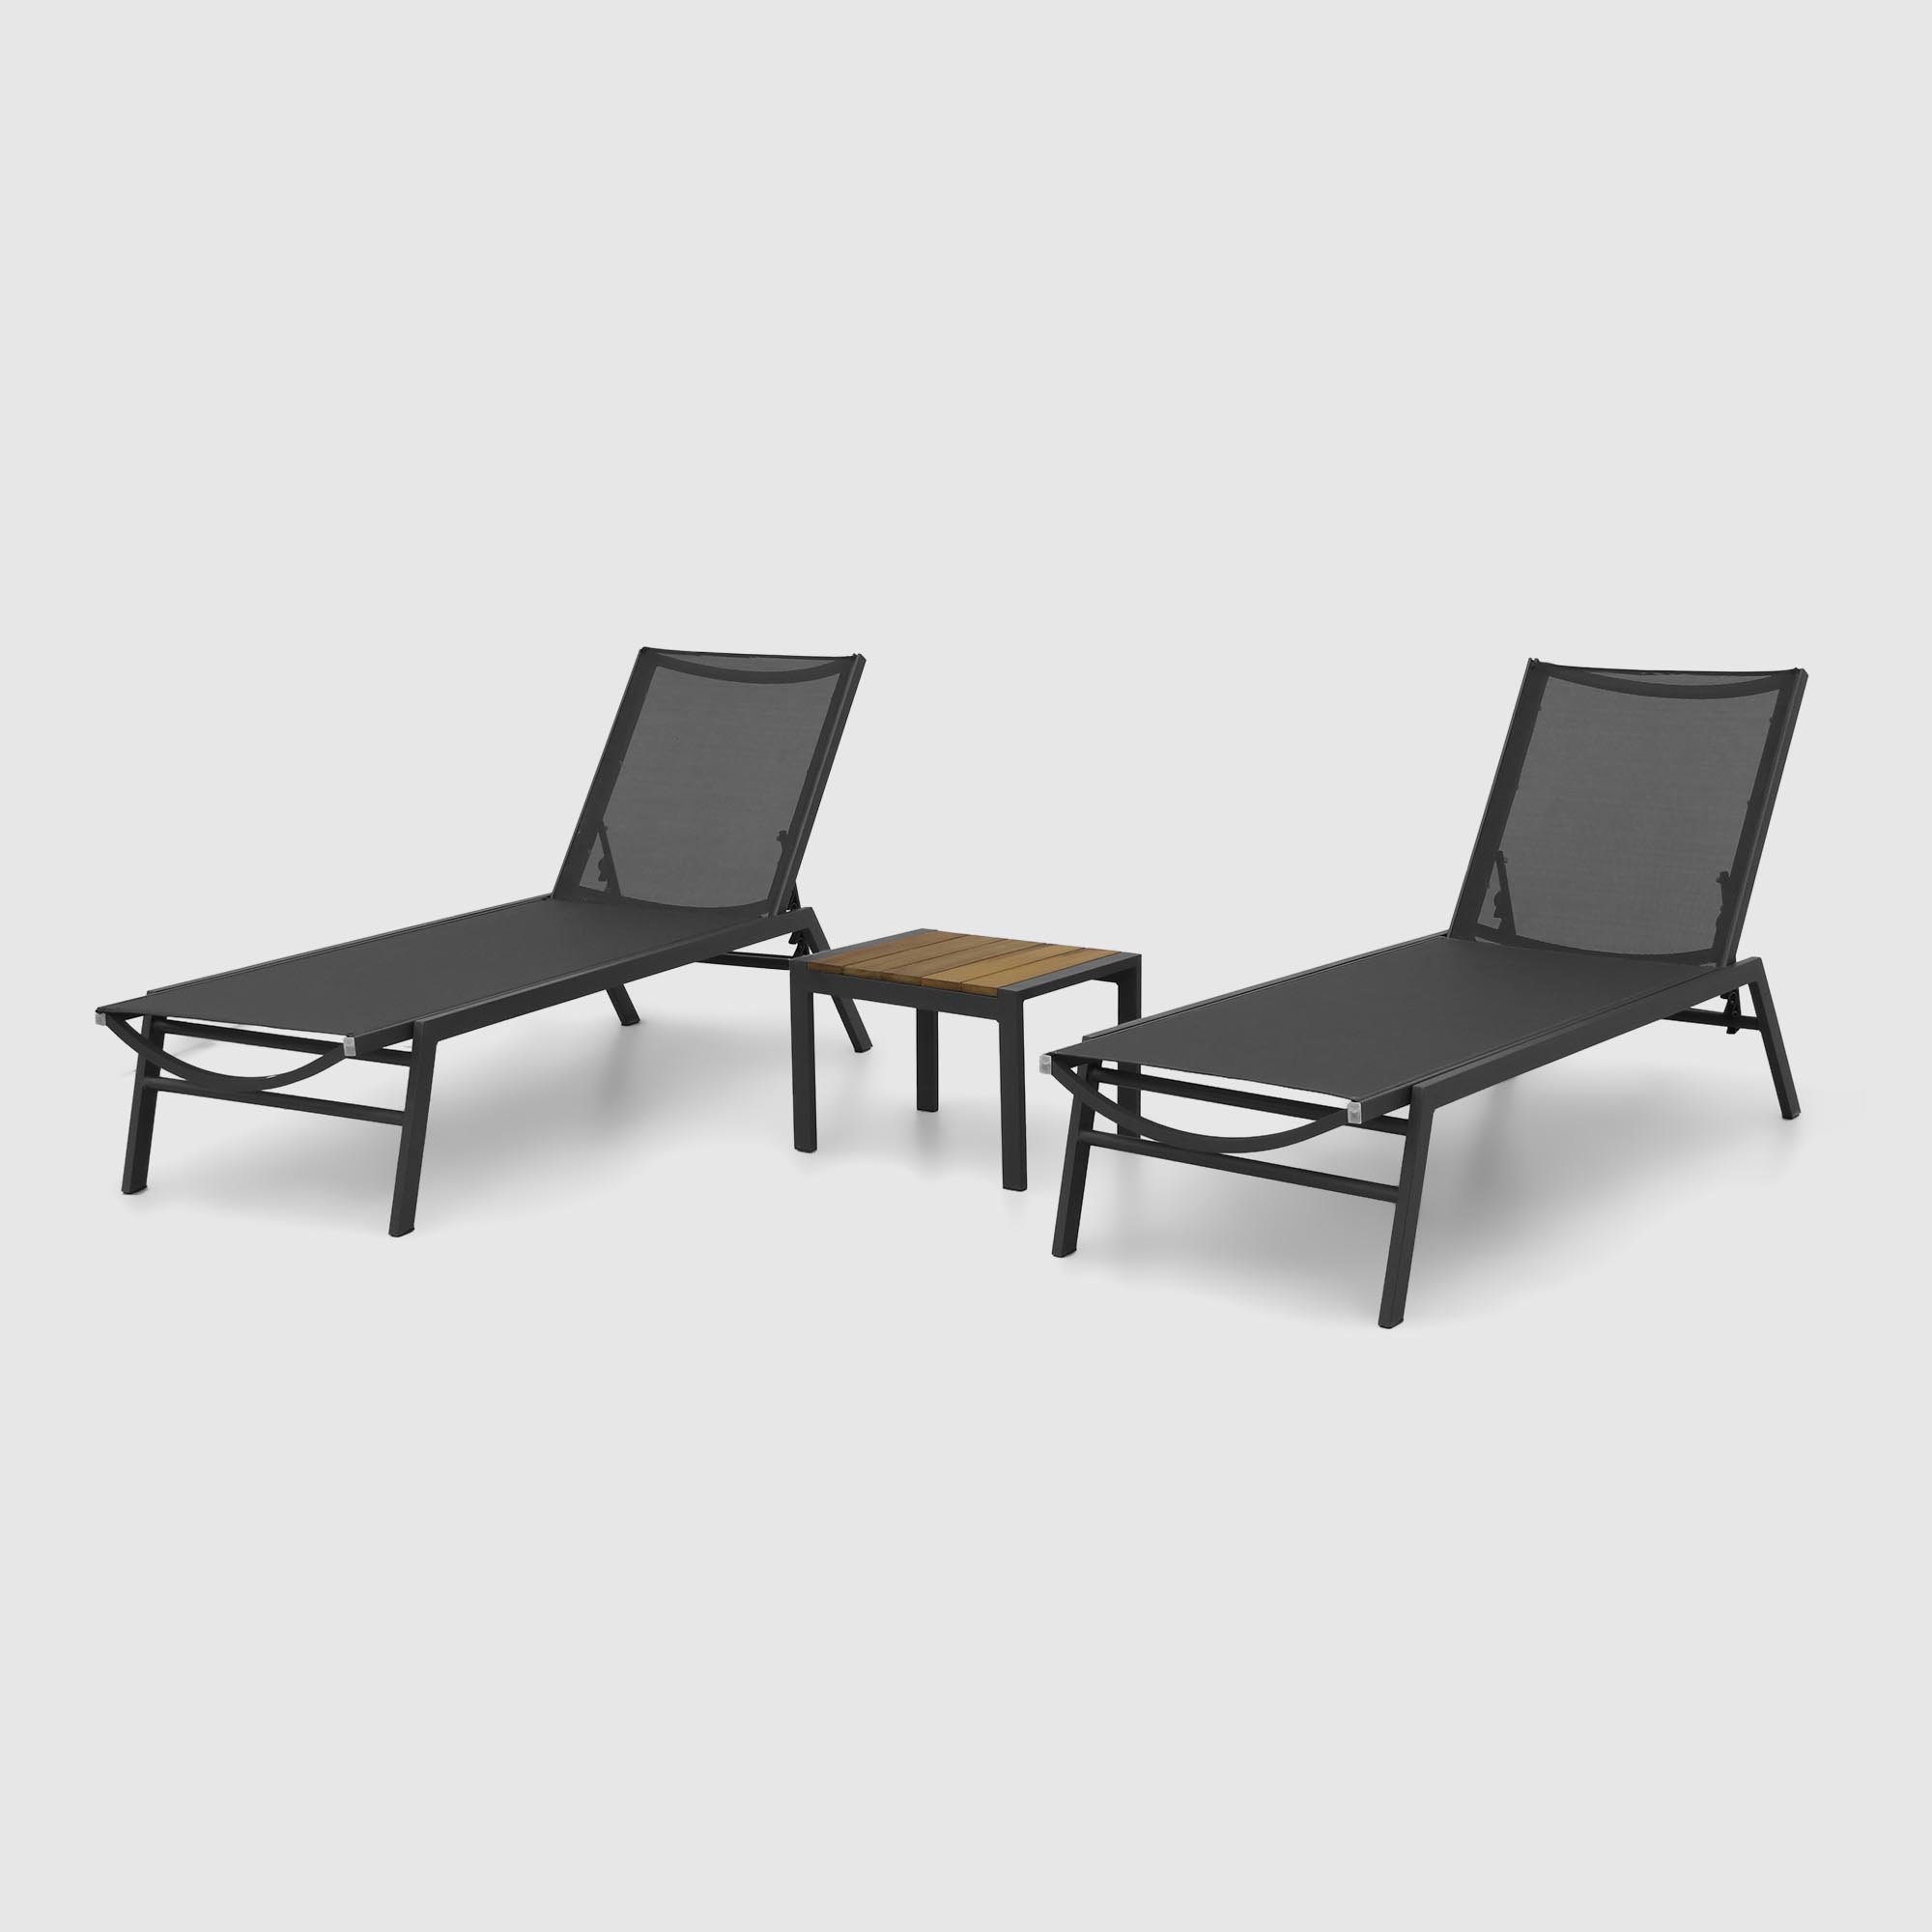 Комплект мебели Emek garden столик и два шезлонга 3 предмета, цвет черный